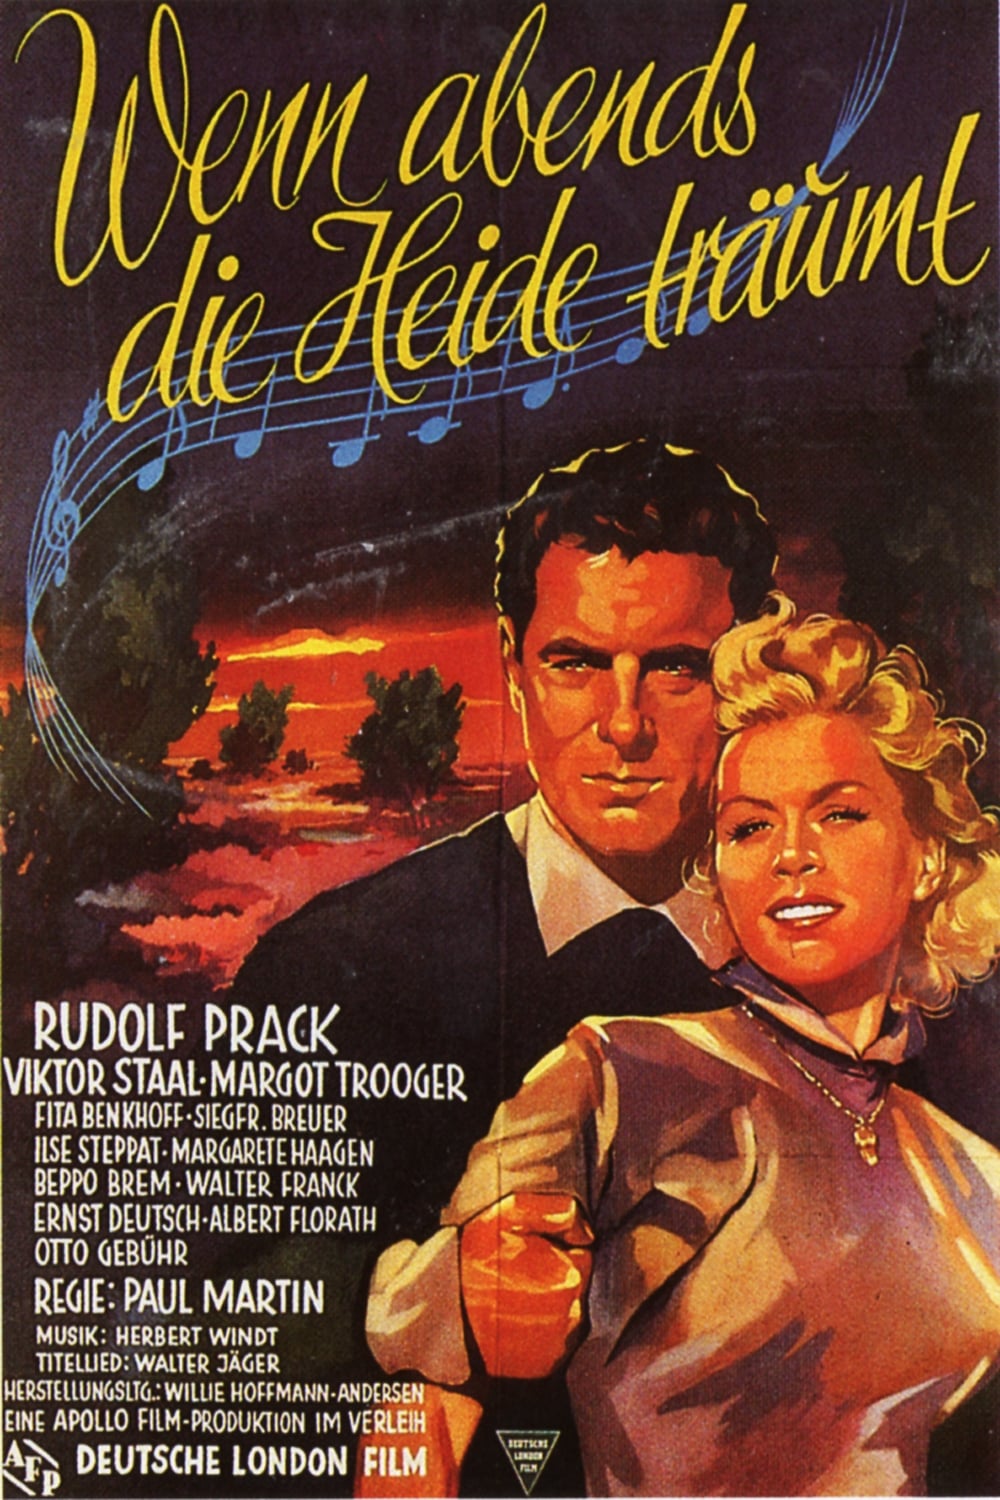 Wenn abends die Heide träumt (1952)